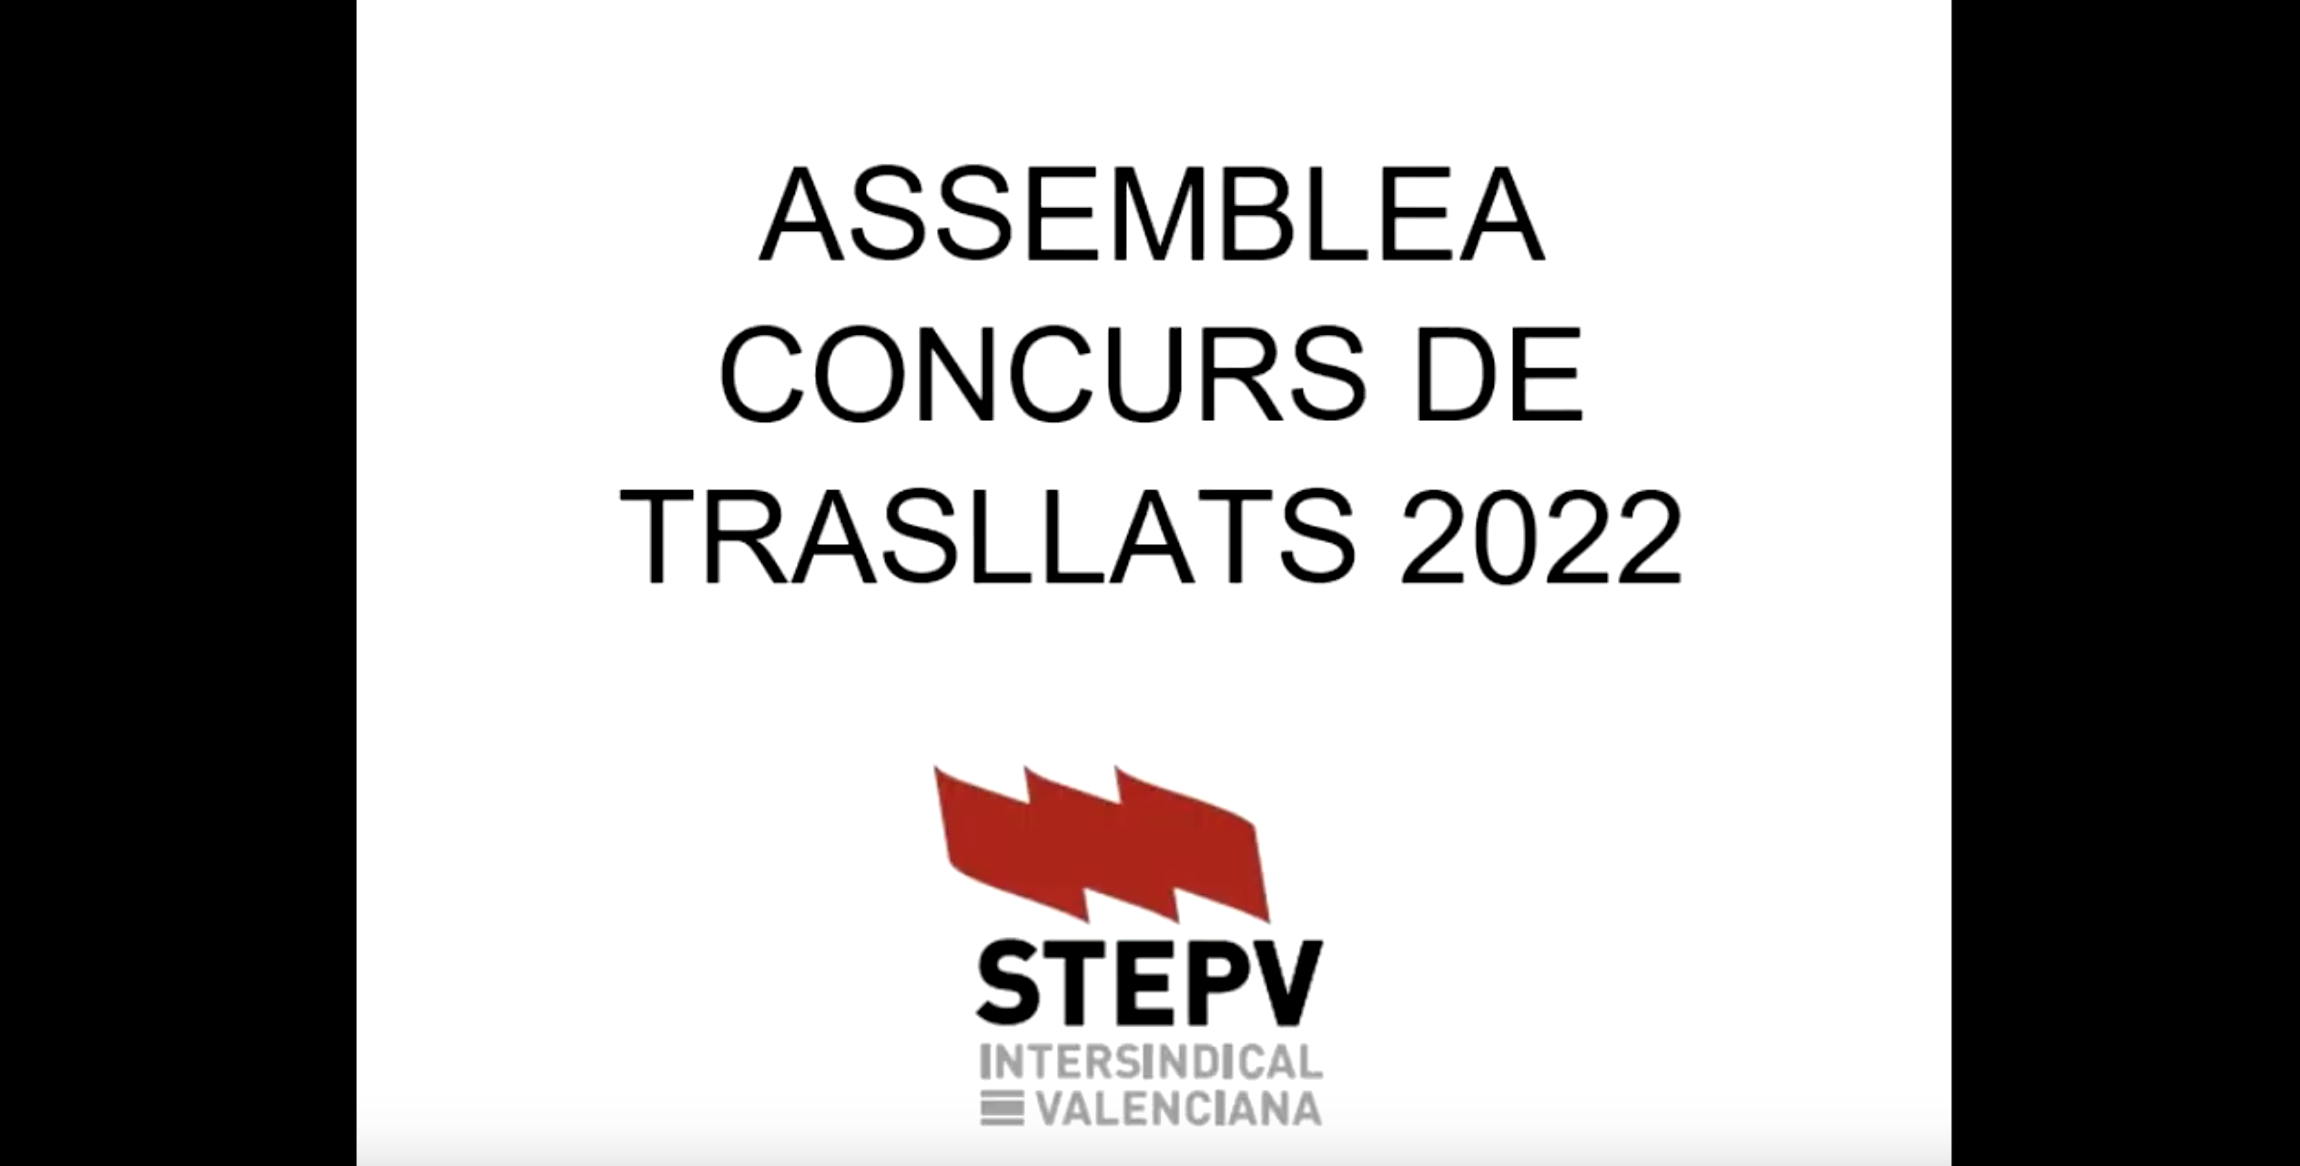 Assemblea Concurs de Trasllats 2022